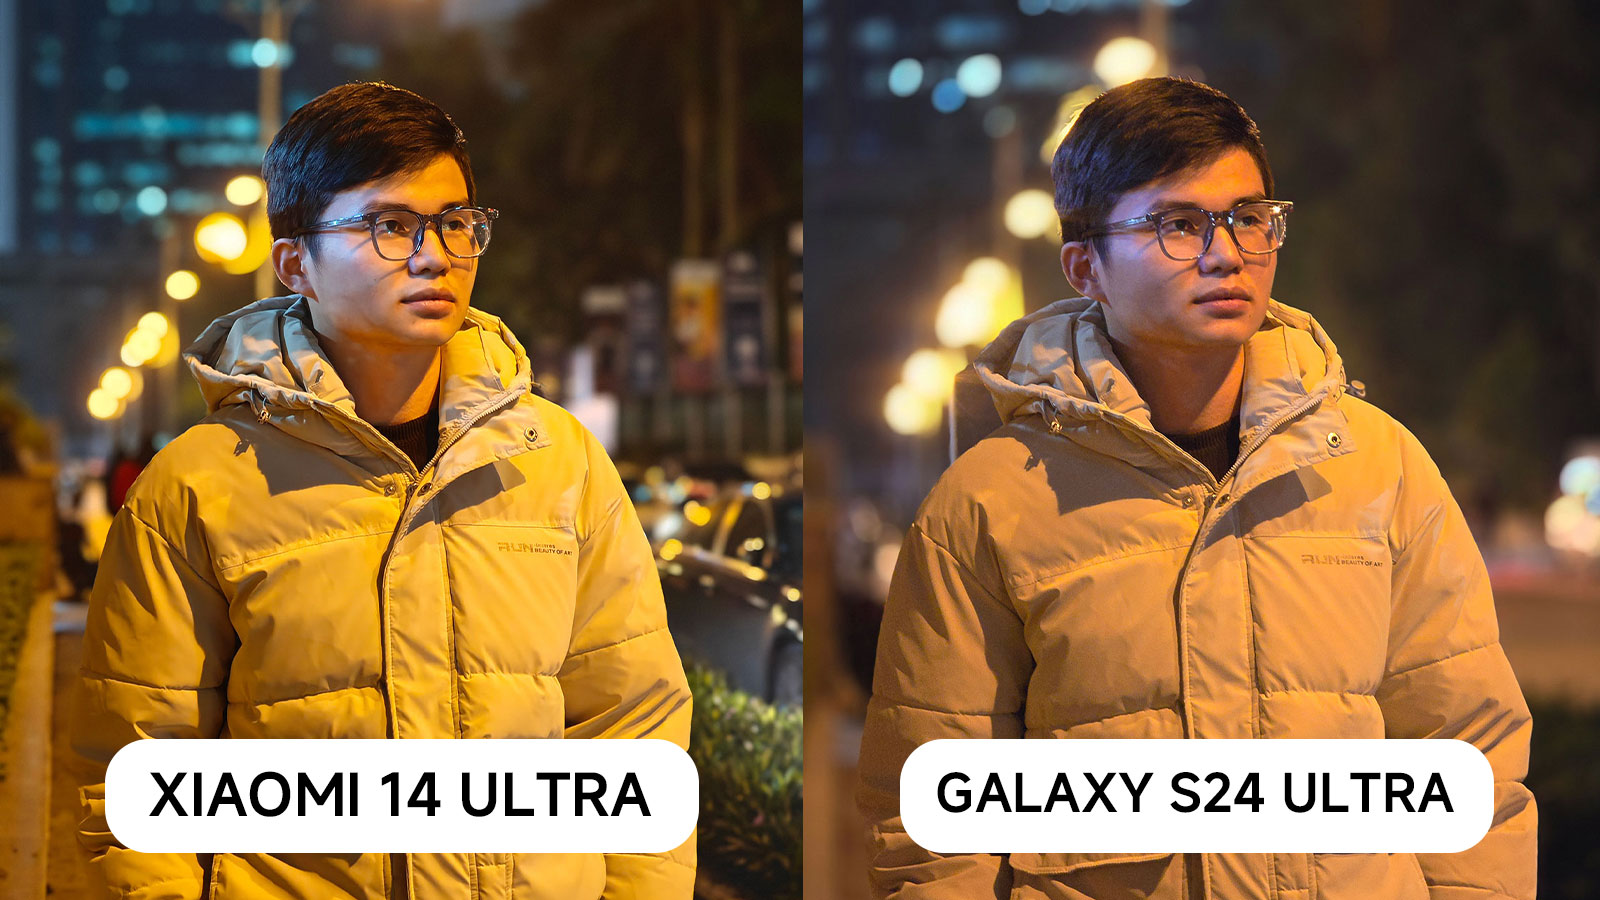 Bình chọn ảnh chụp từ Xiaomi 14 Ultra và Galaxy S24 Ultra